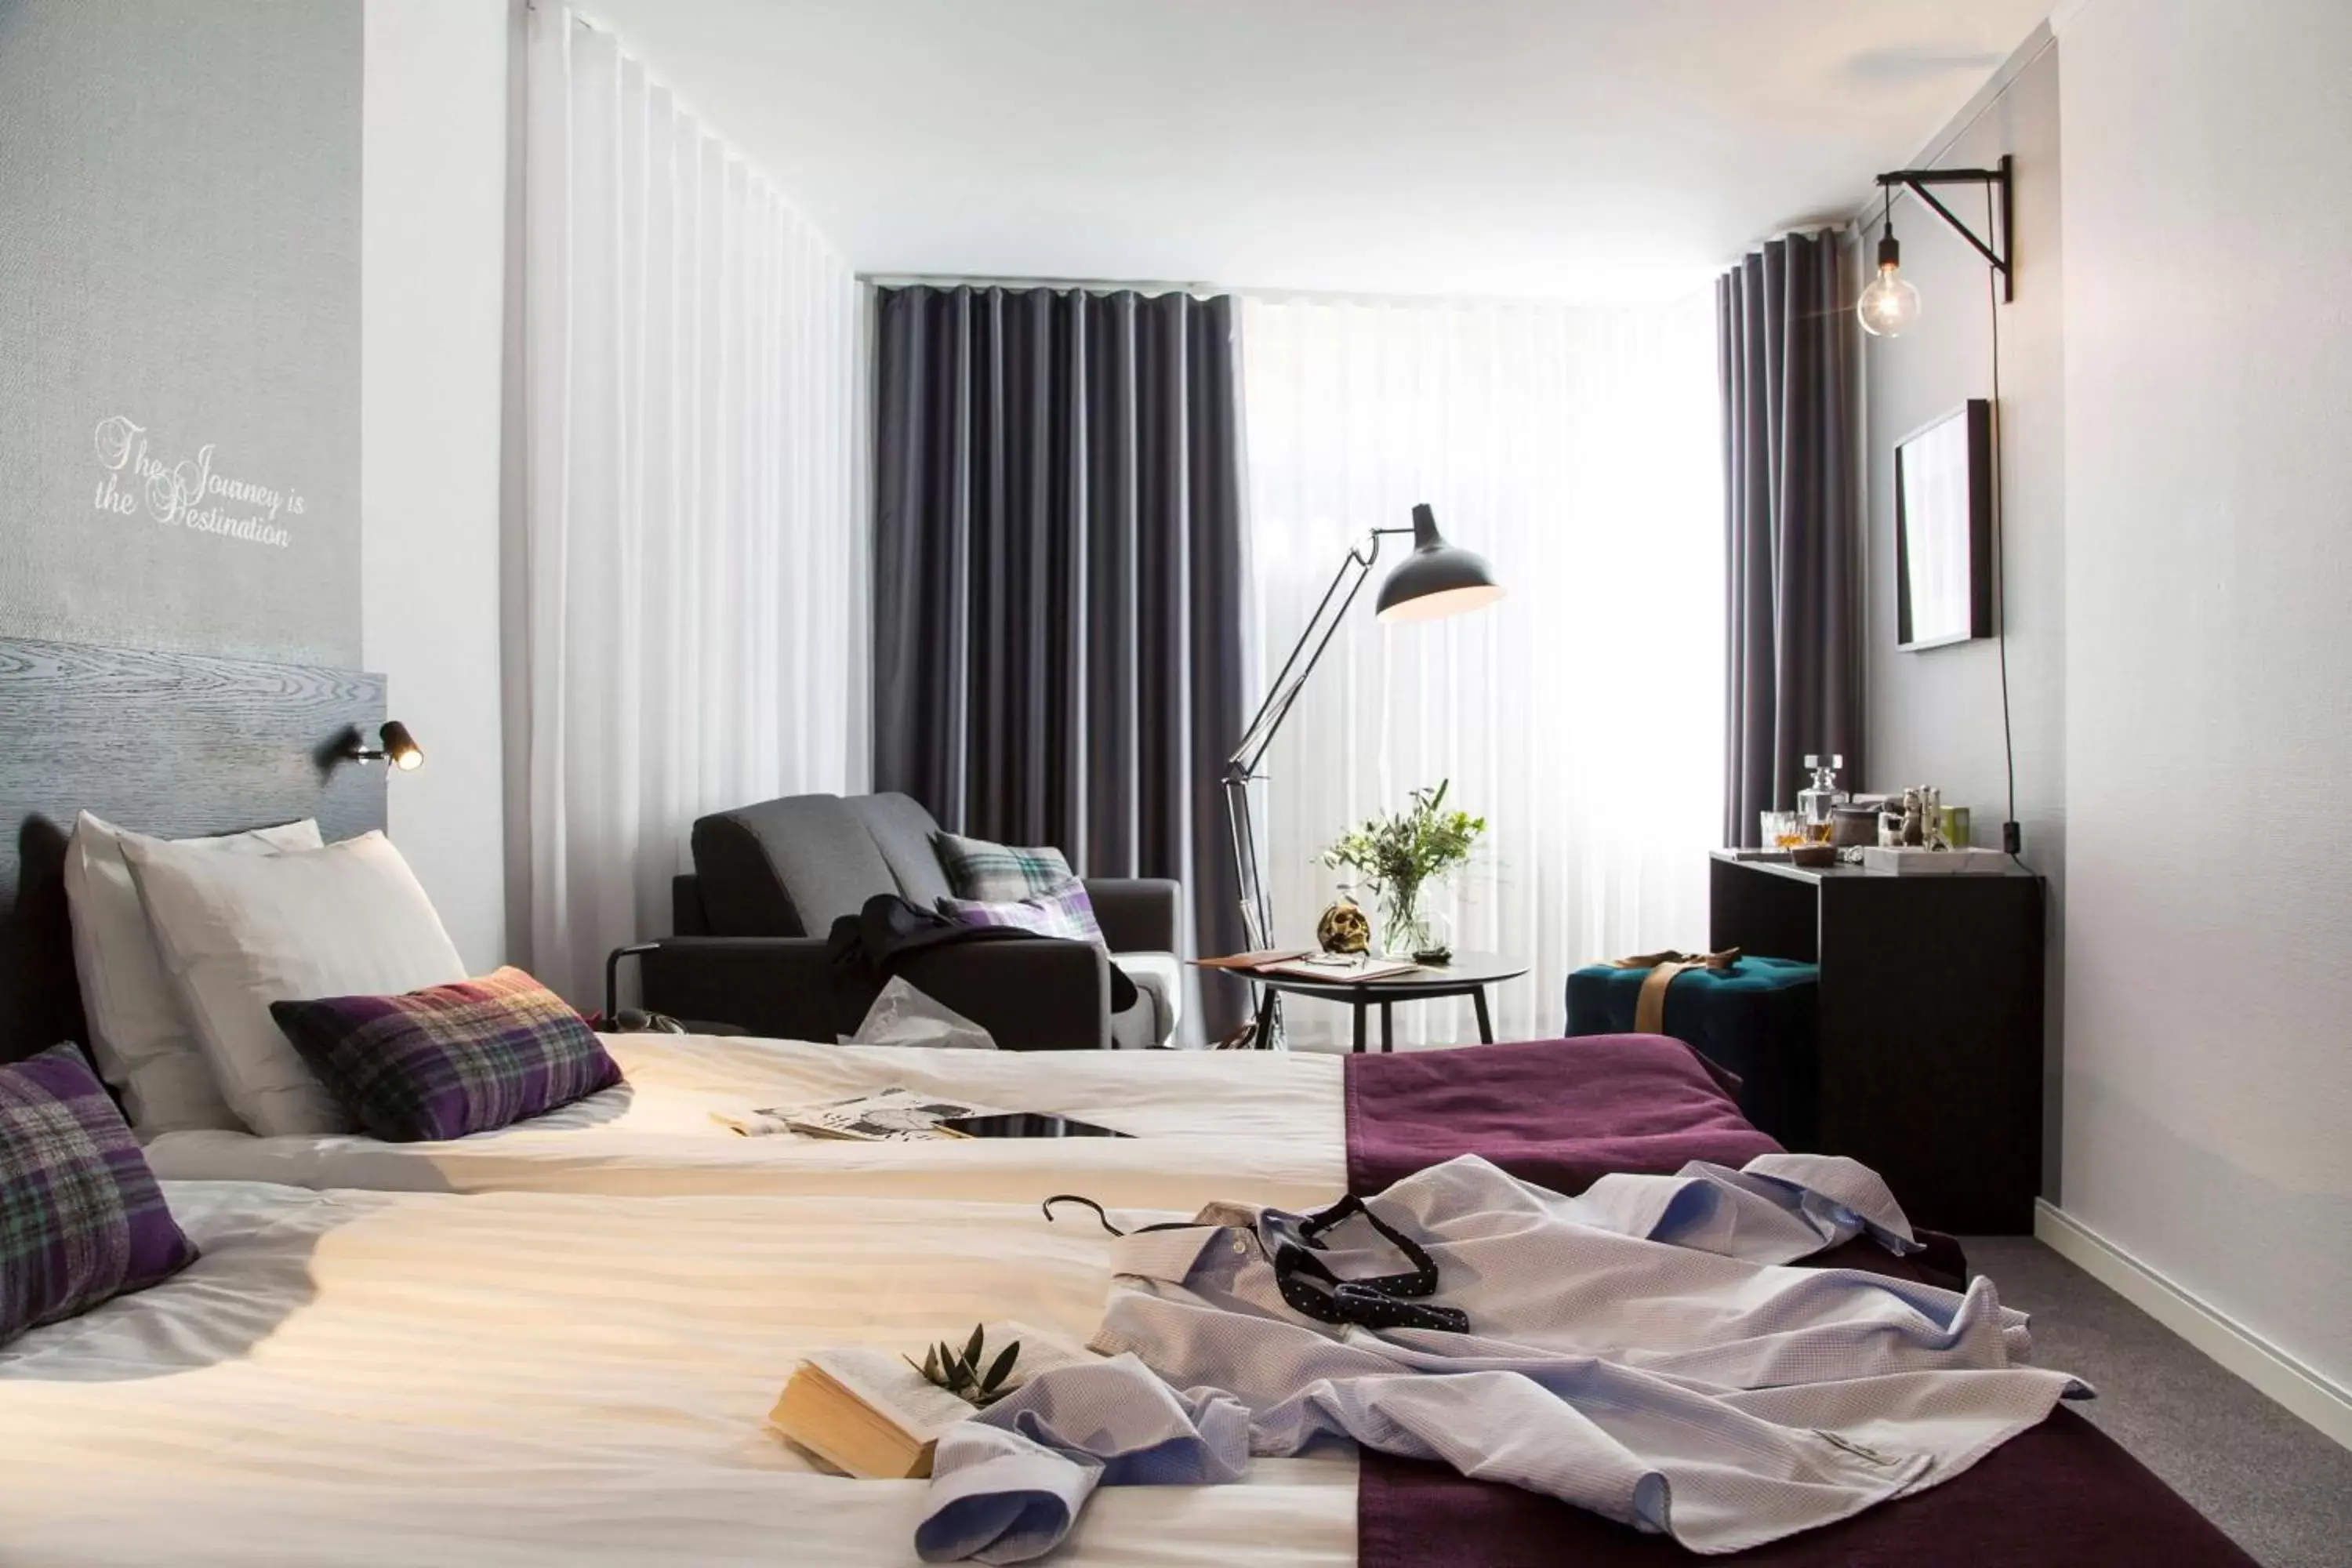 People, Bed in Best Western Kom Hotel Stockholm